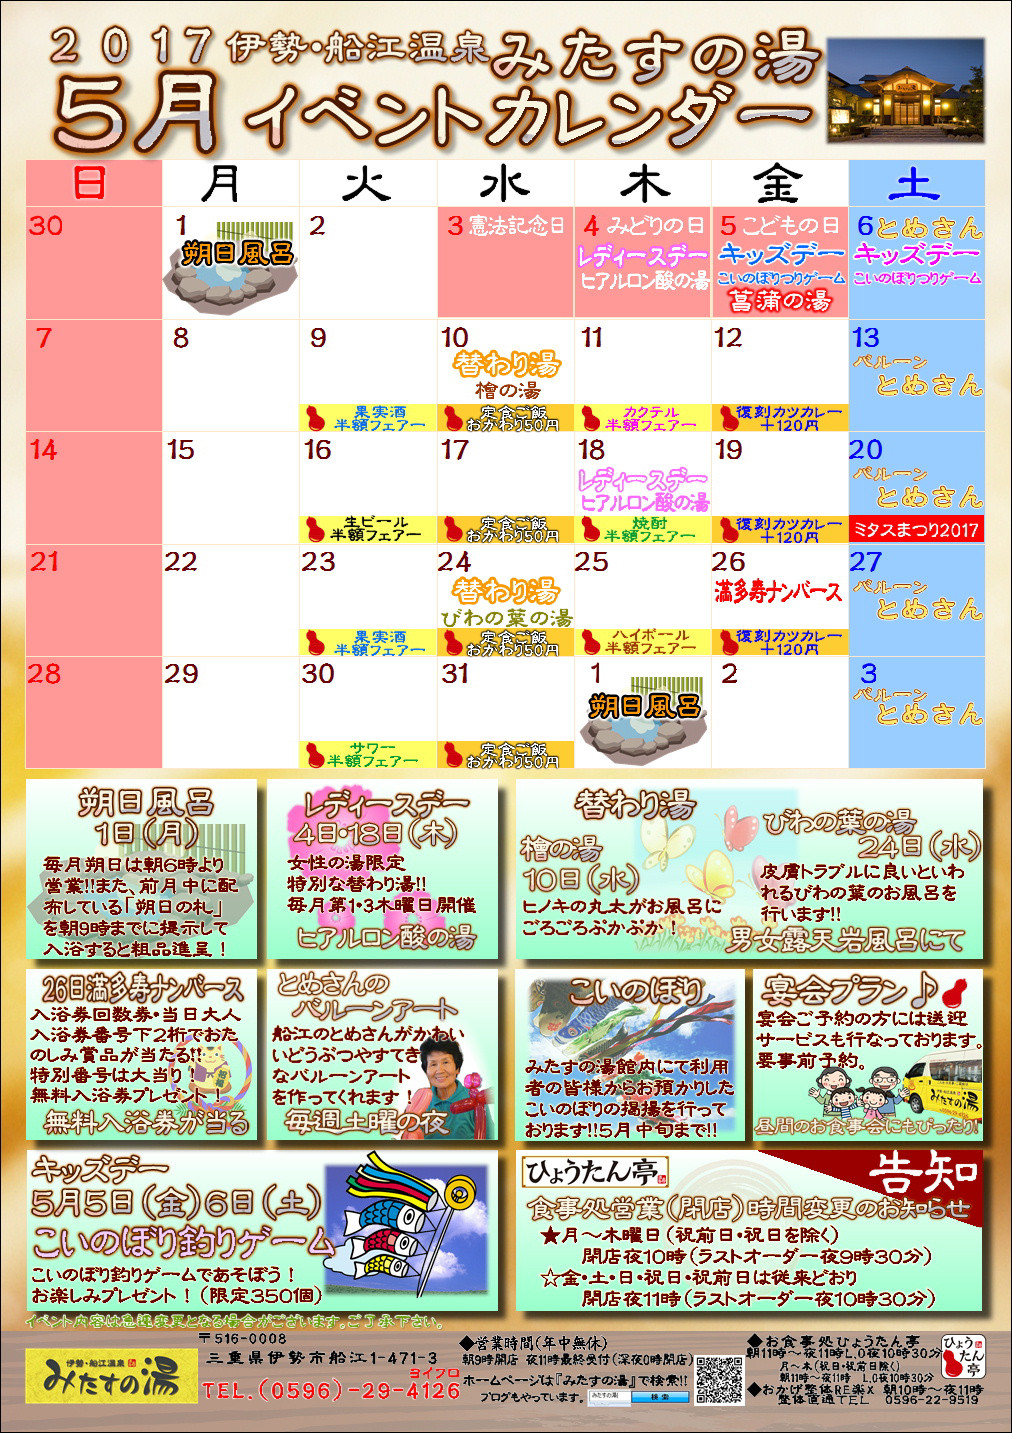 17年5月のイベントカレンダー 三重県伊勢市のスーパー銭湯 伊勢 船江温泉 みたすの湯